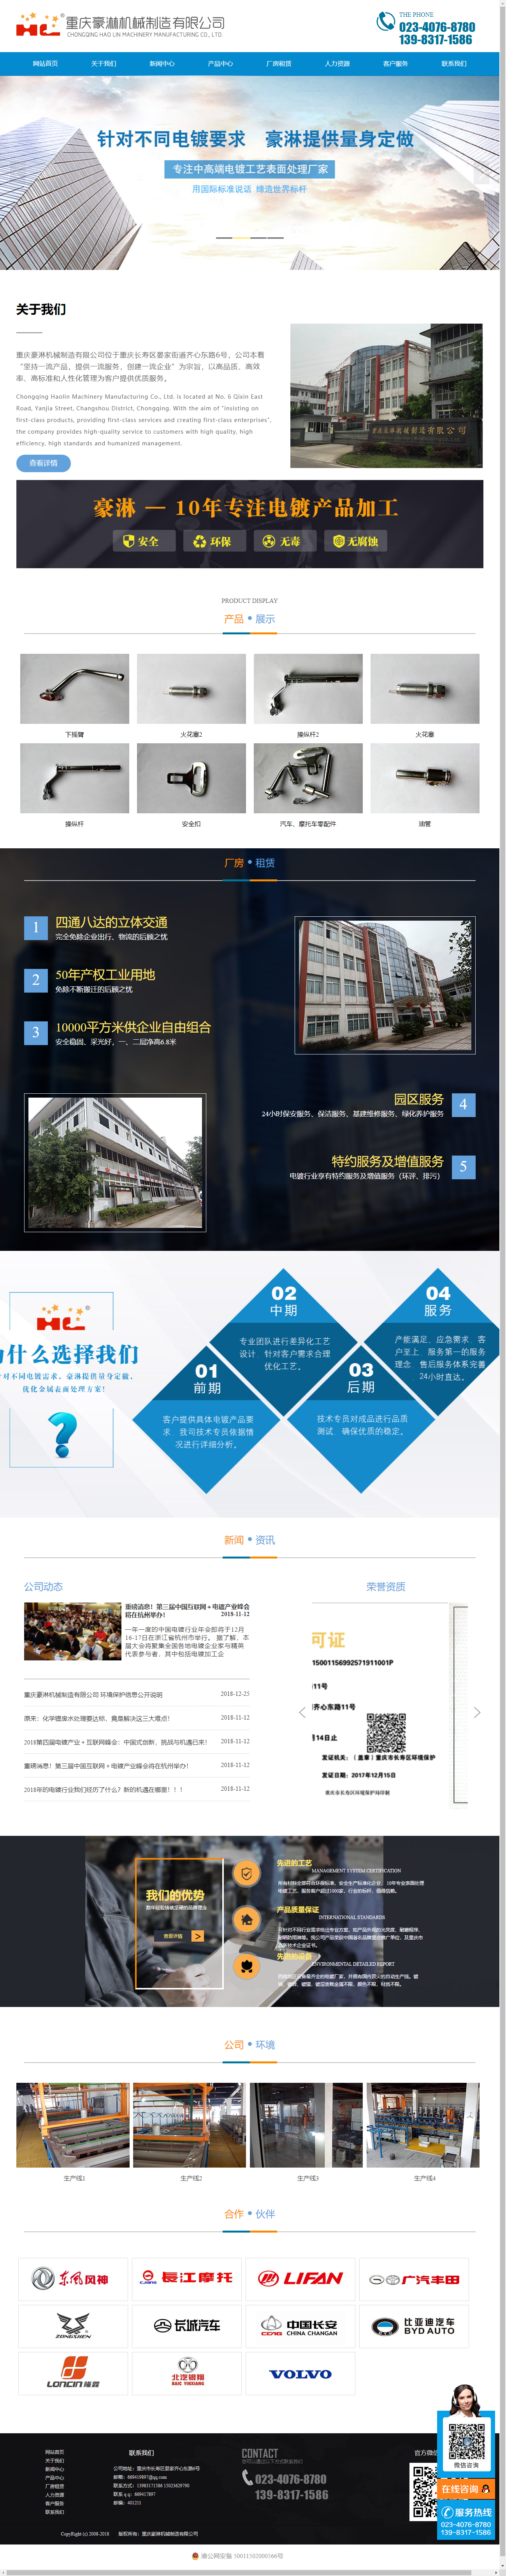 重庆豪淋机械制造有限公司网站案例